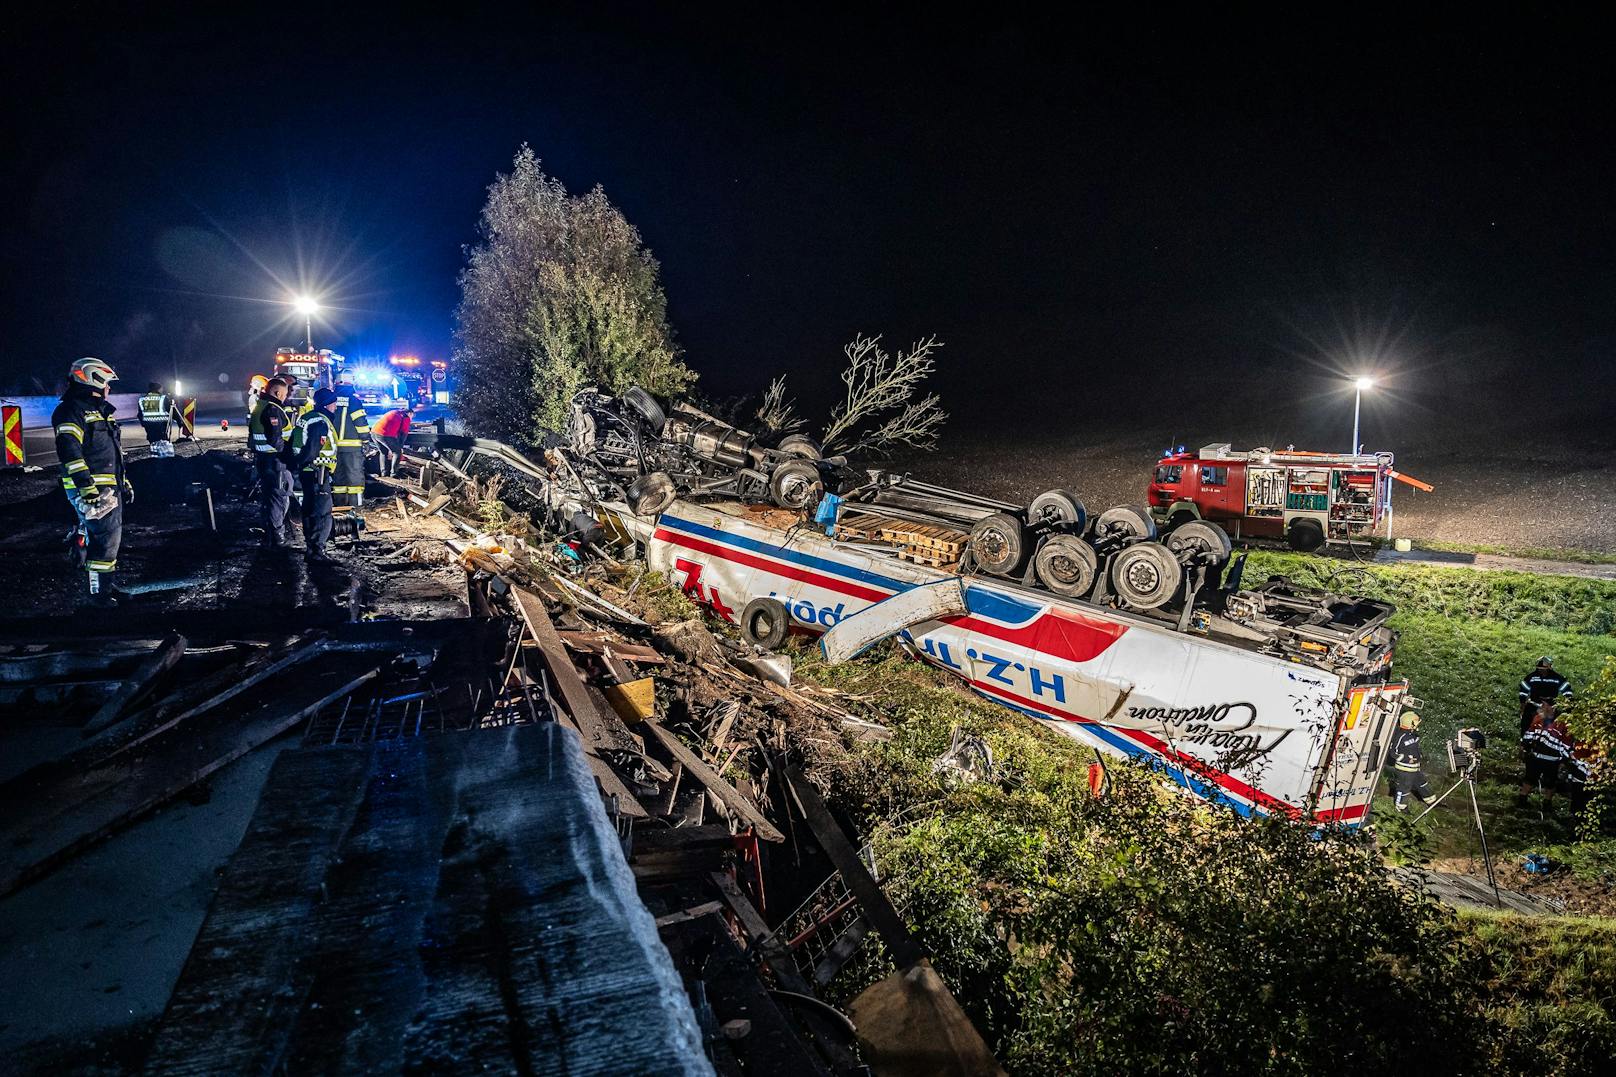 Fotos zeigen unglaublichen Lkw-Überschlag nach Unfall